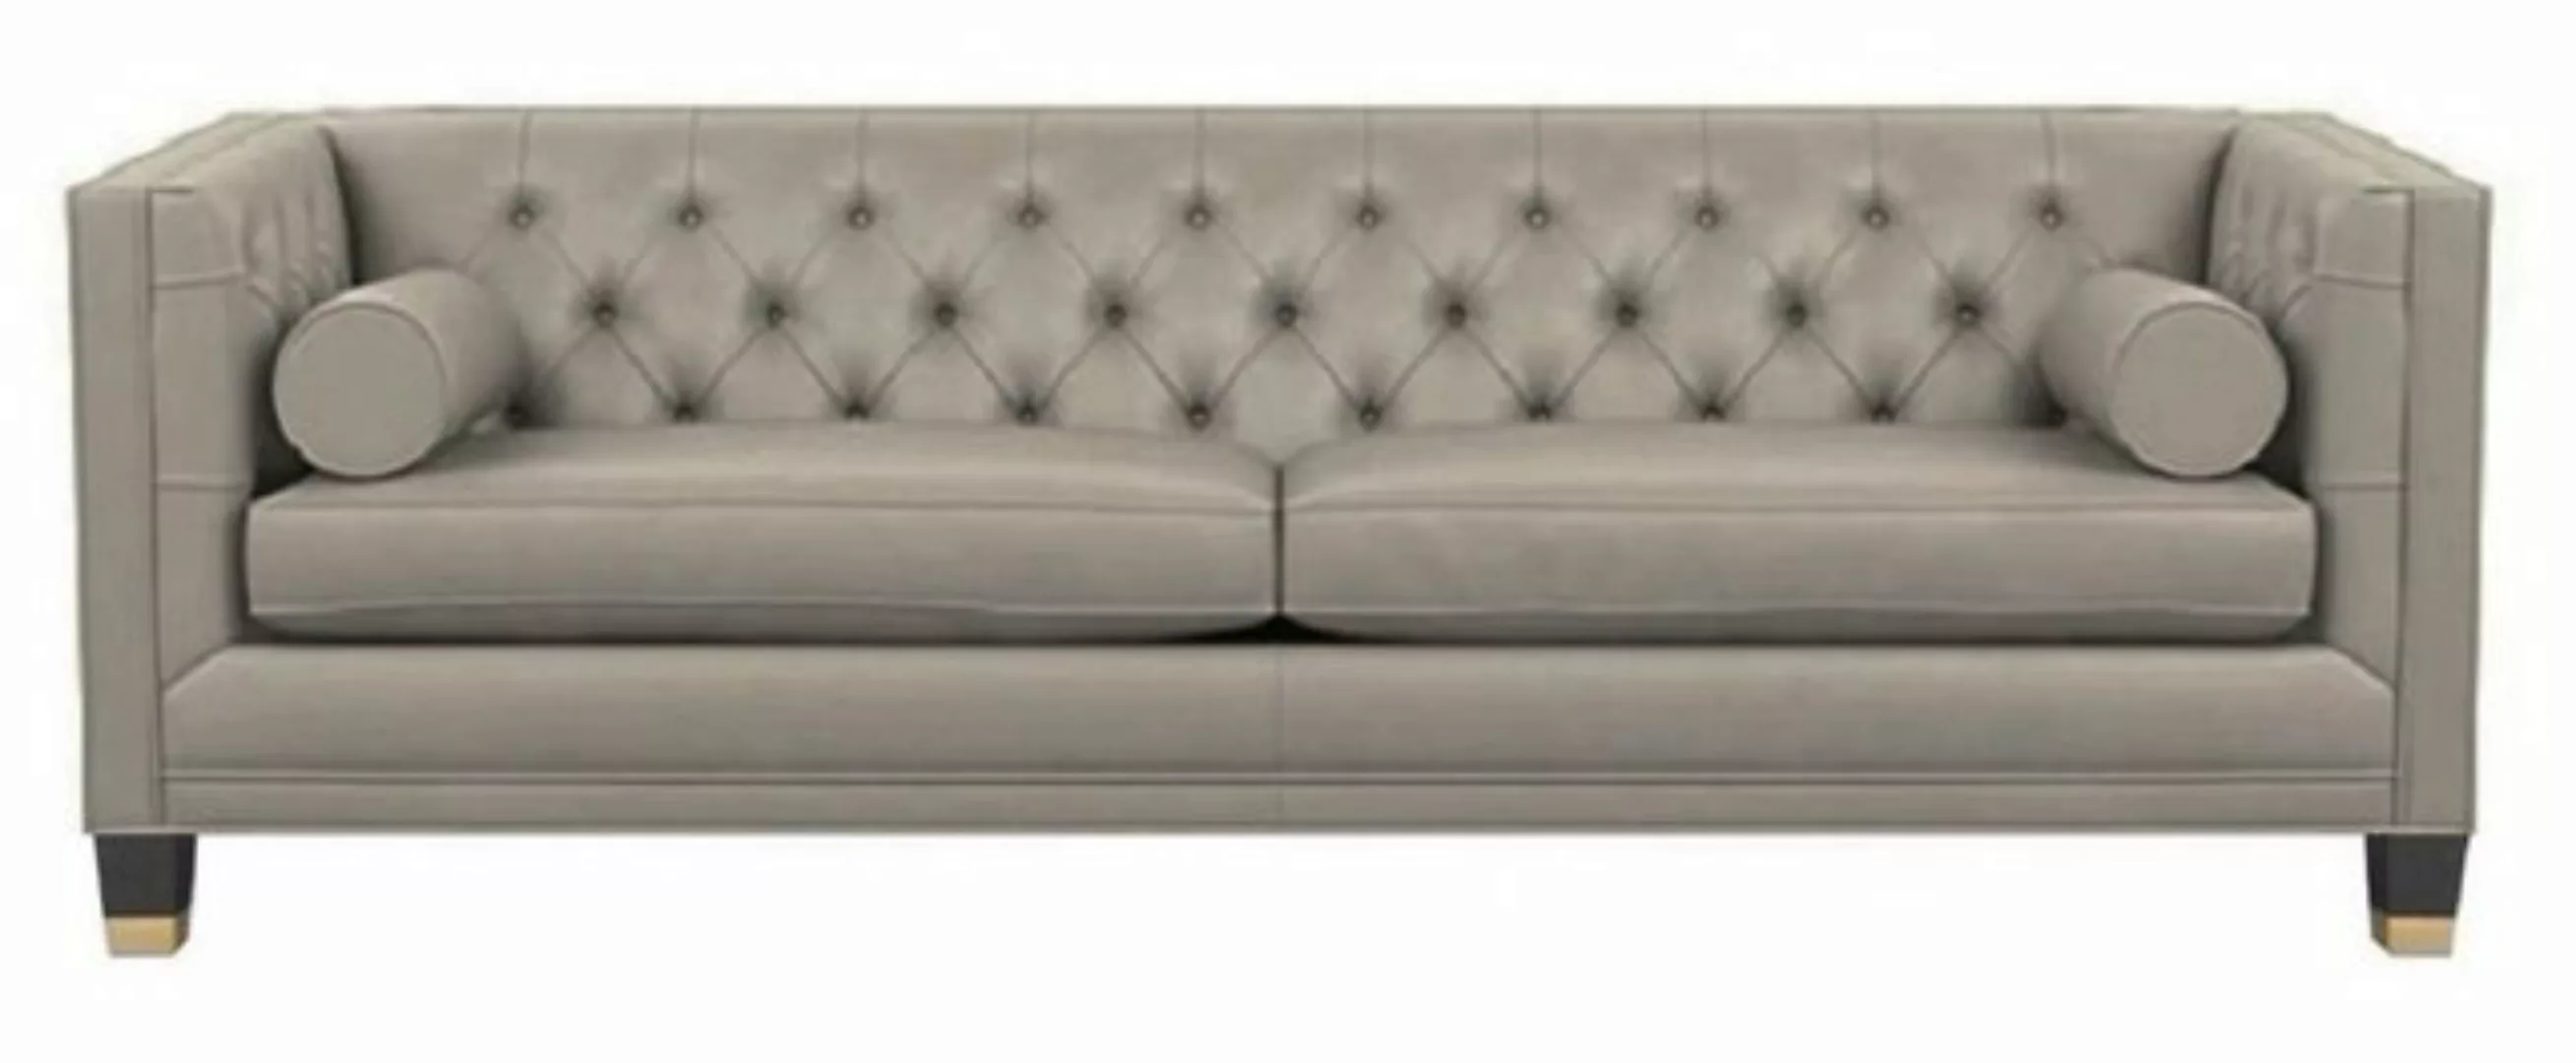 JVmoebel Sofa Chesterfield Wohnzimmer Sofa Design Couchen Braun, Made in Eu günstig online kaufen